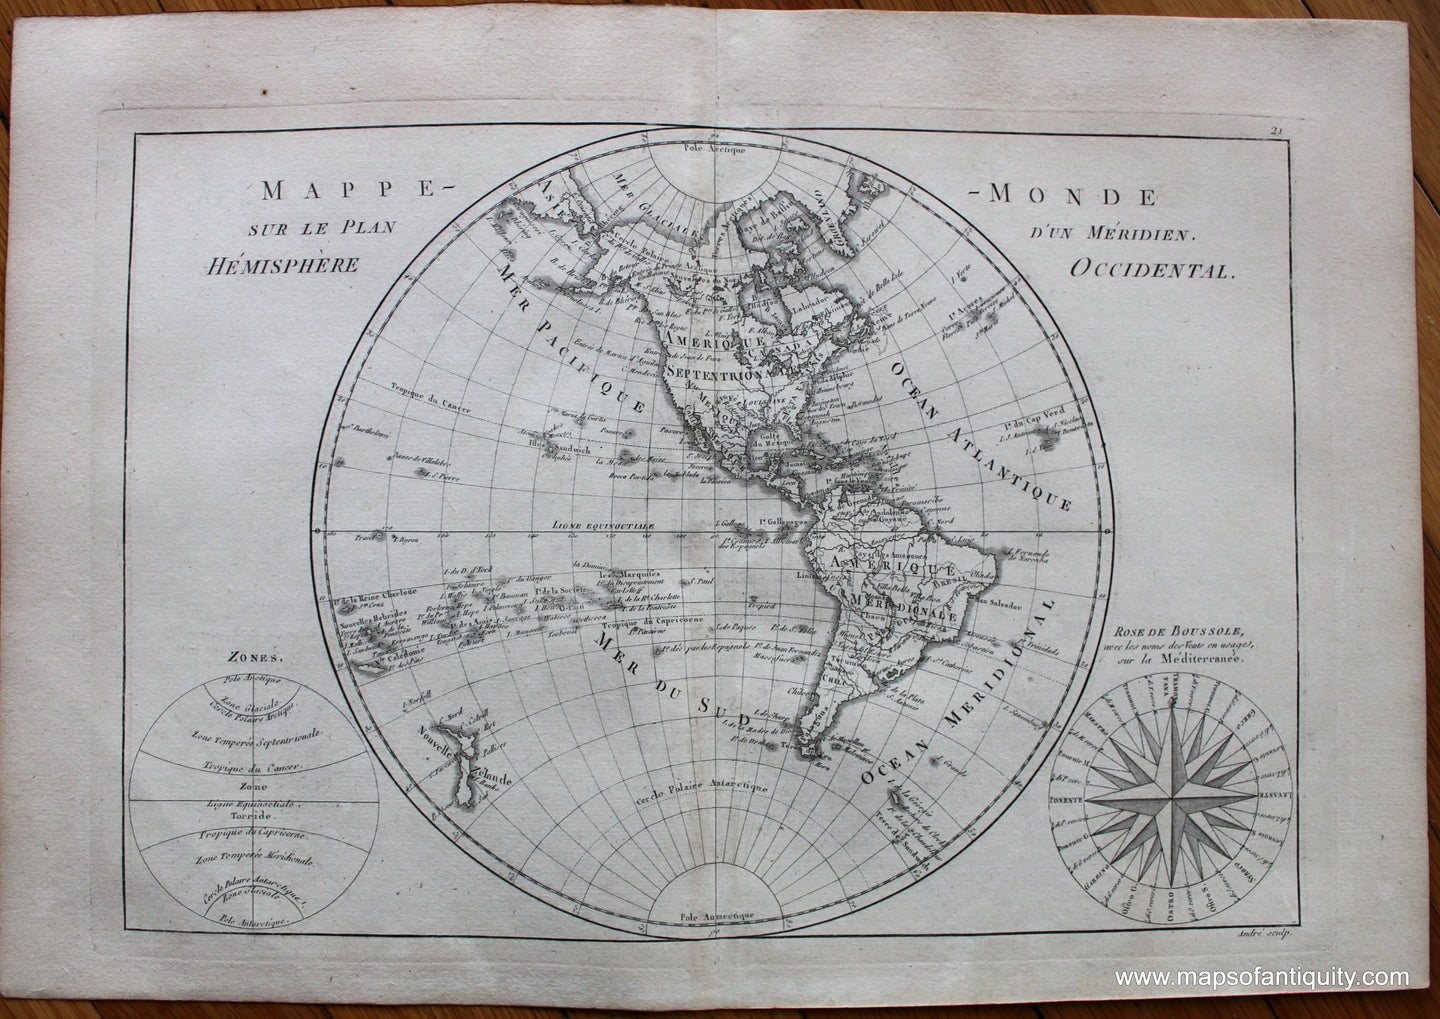 1787 - Mappe-Monde sur Le Plan D'Un Meridien Hemisphere Occidental - Antique Map